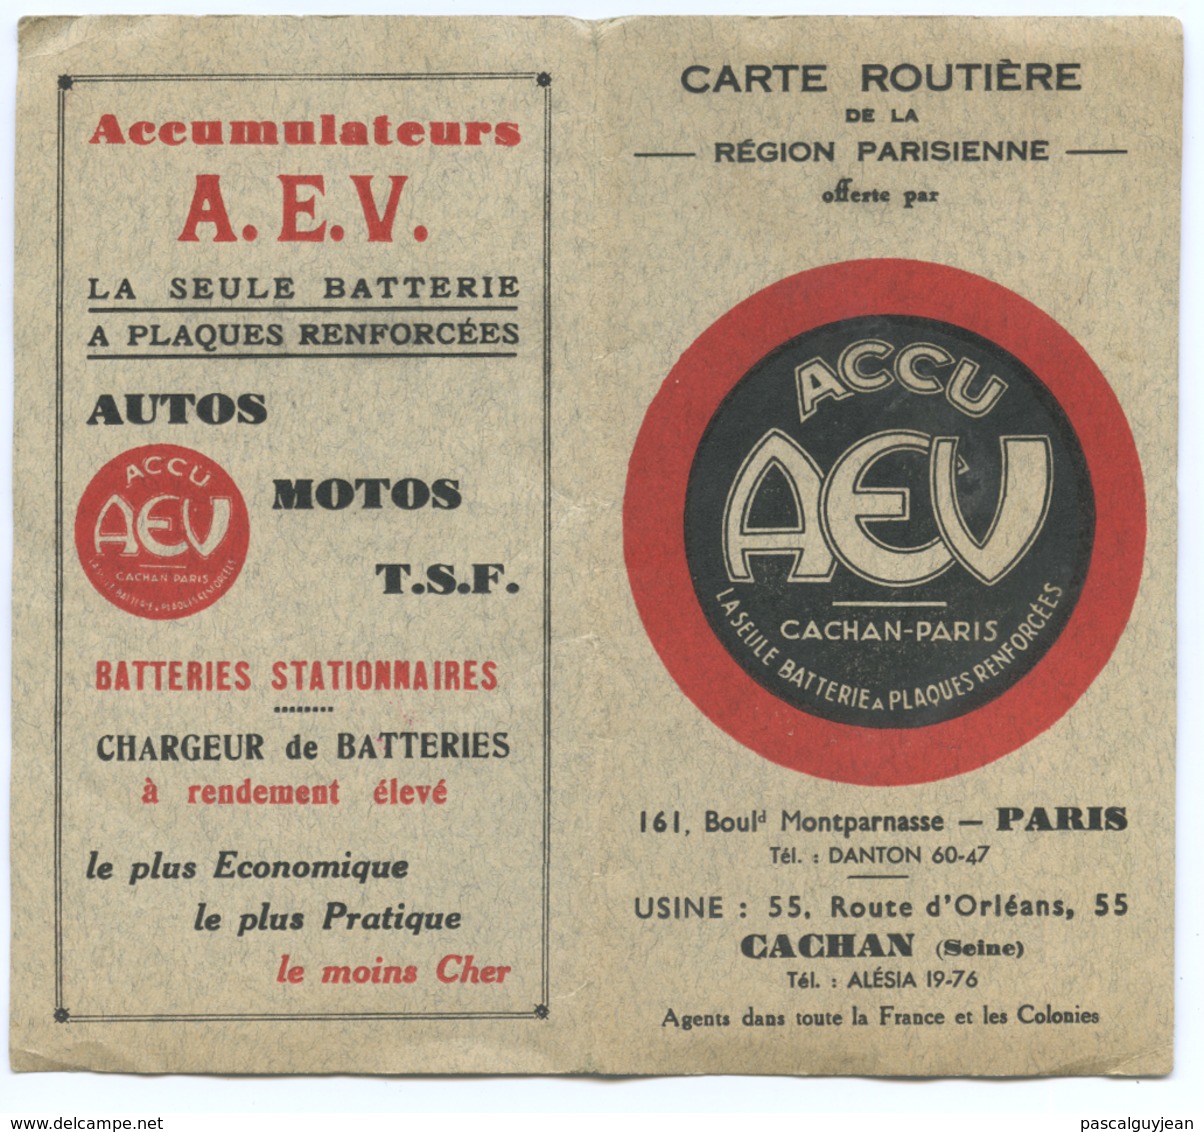 CARTE ROUTIERE DE LA REGION PARISIENNE - PUBLICITE ACCU AEV - Cartes Routières